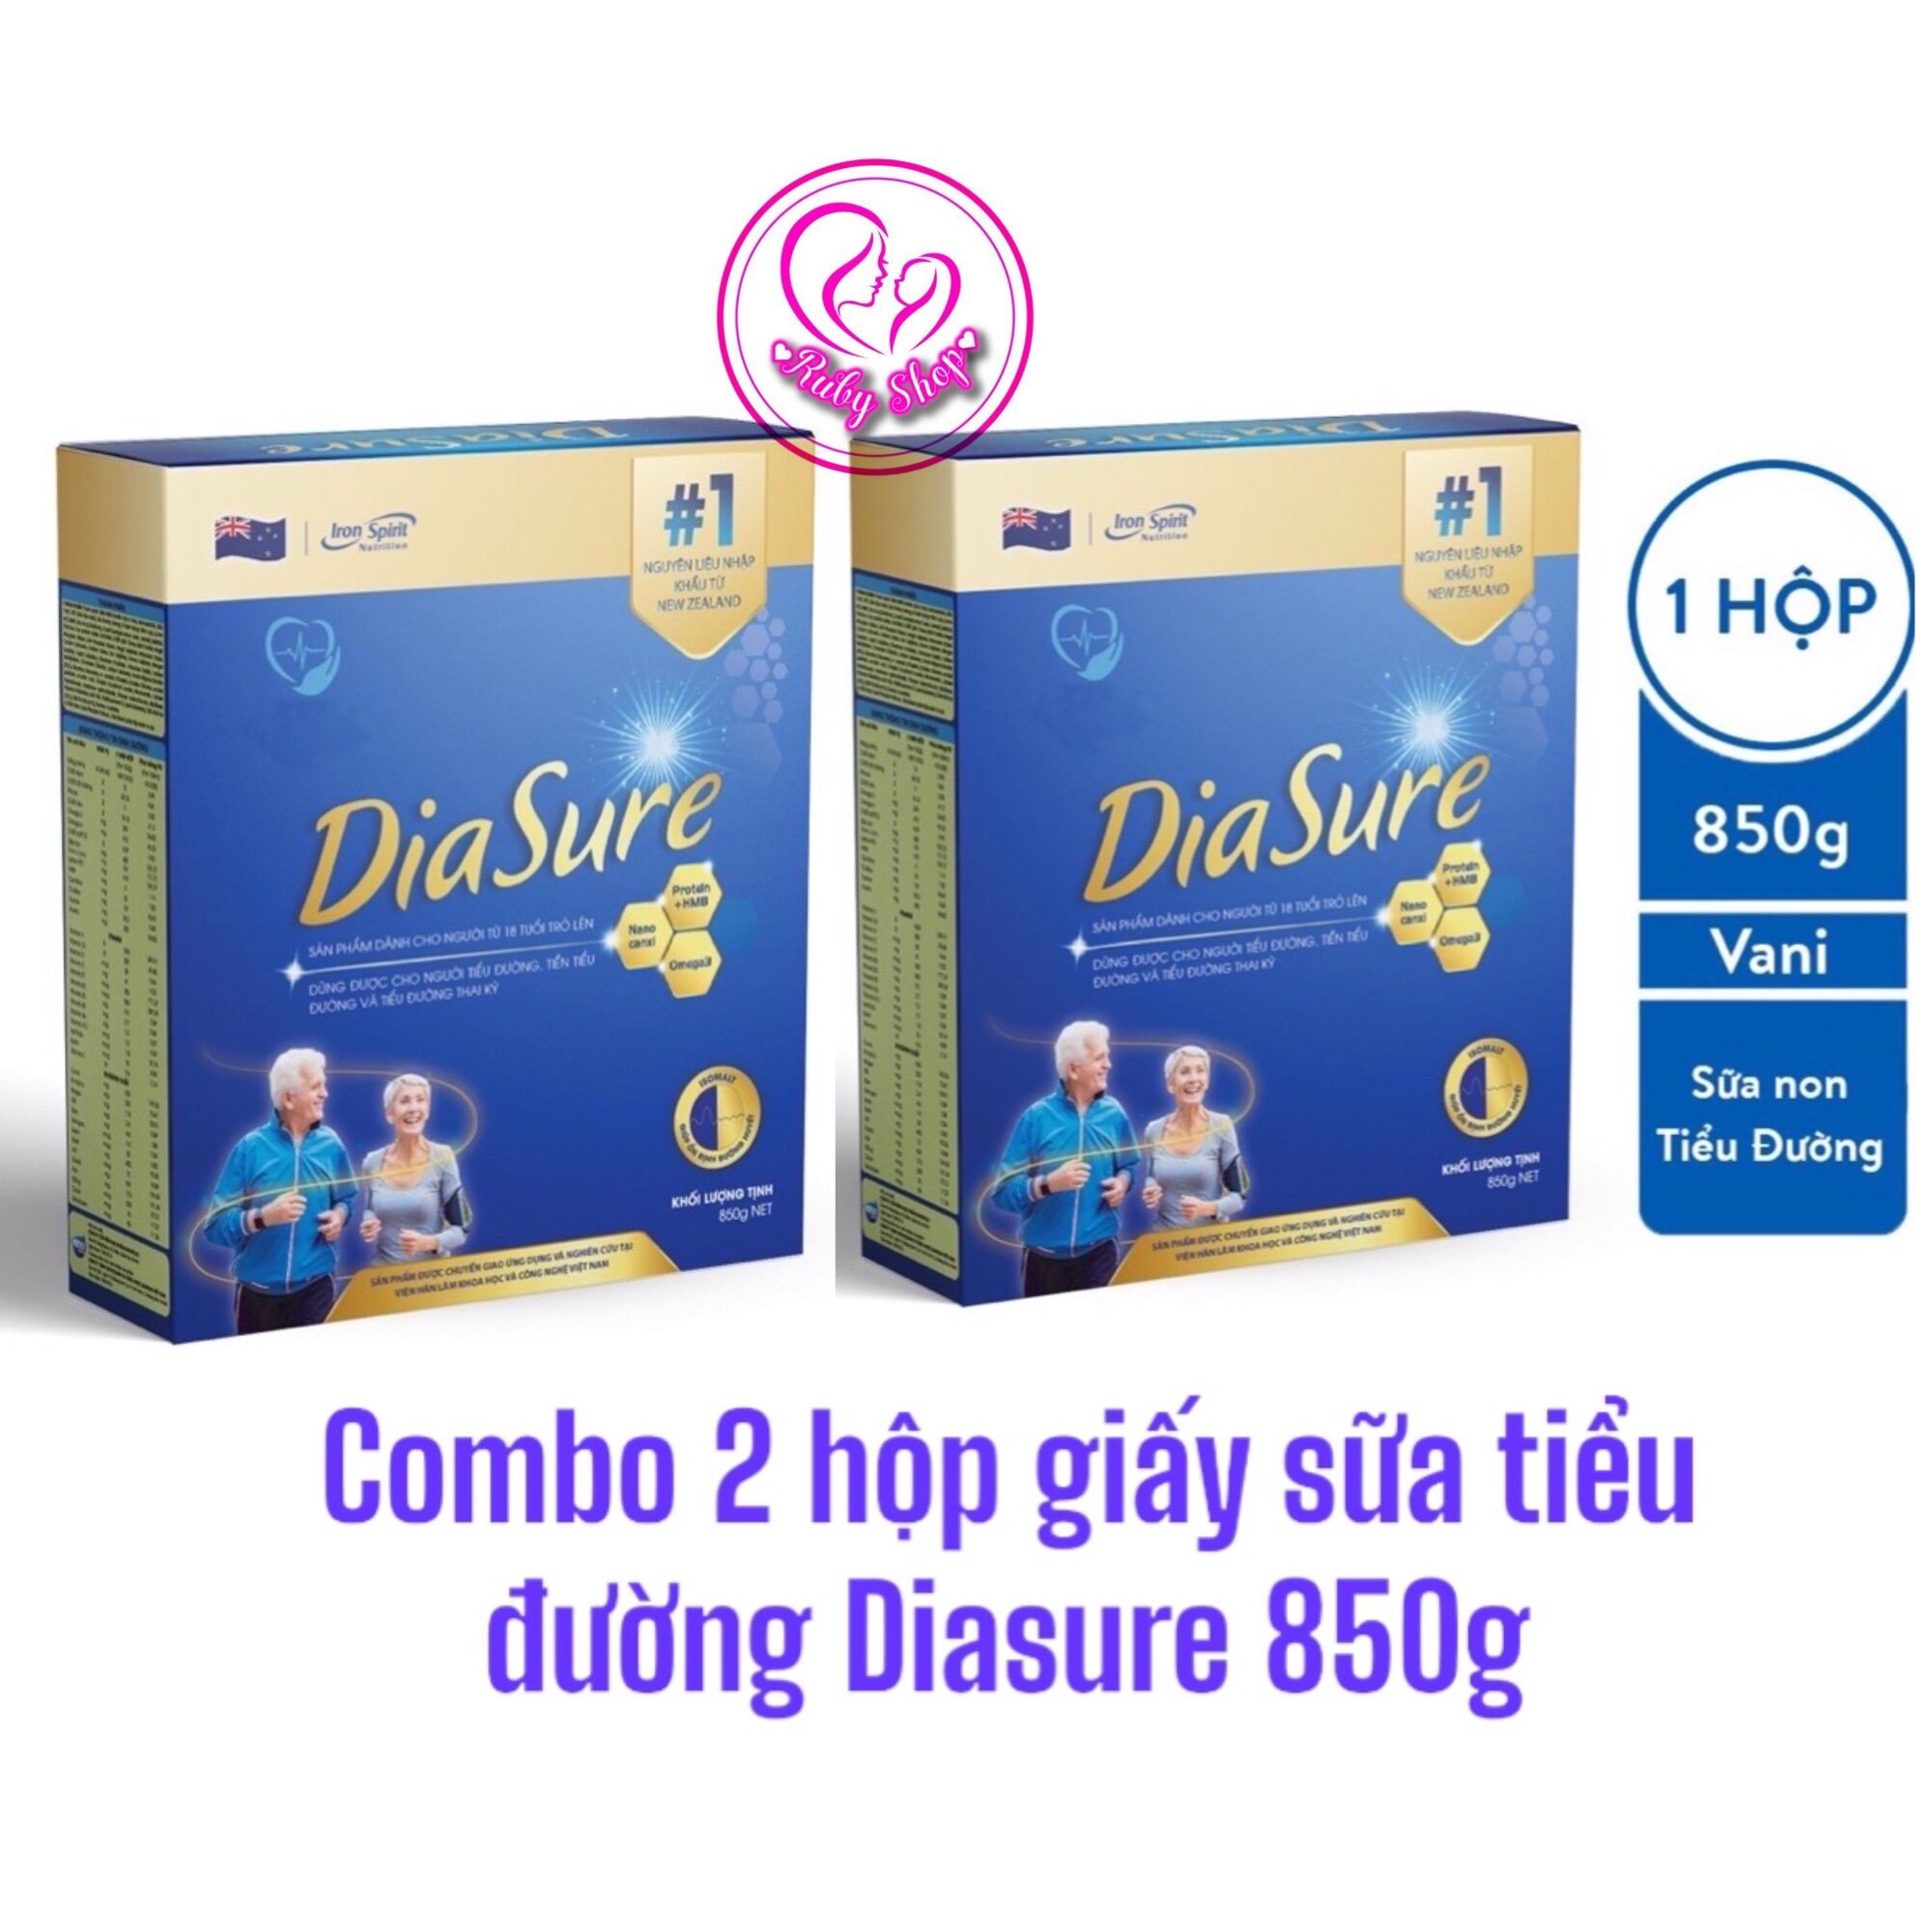 Combo 2 hộp sữa giấy tiểu đường Diasure bản mới 850g hộp 34 gói nhỏ tiện